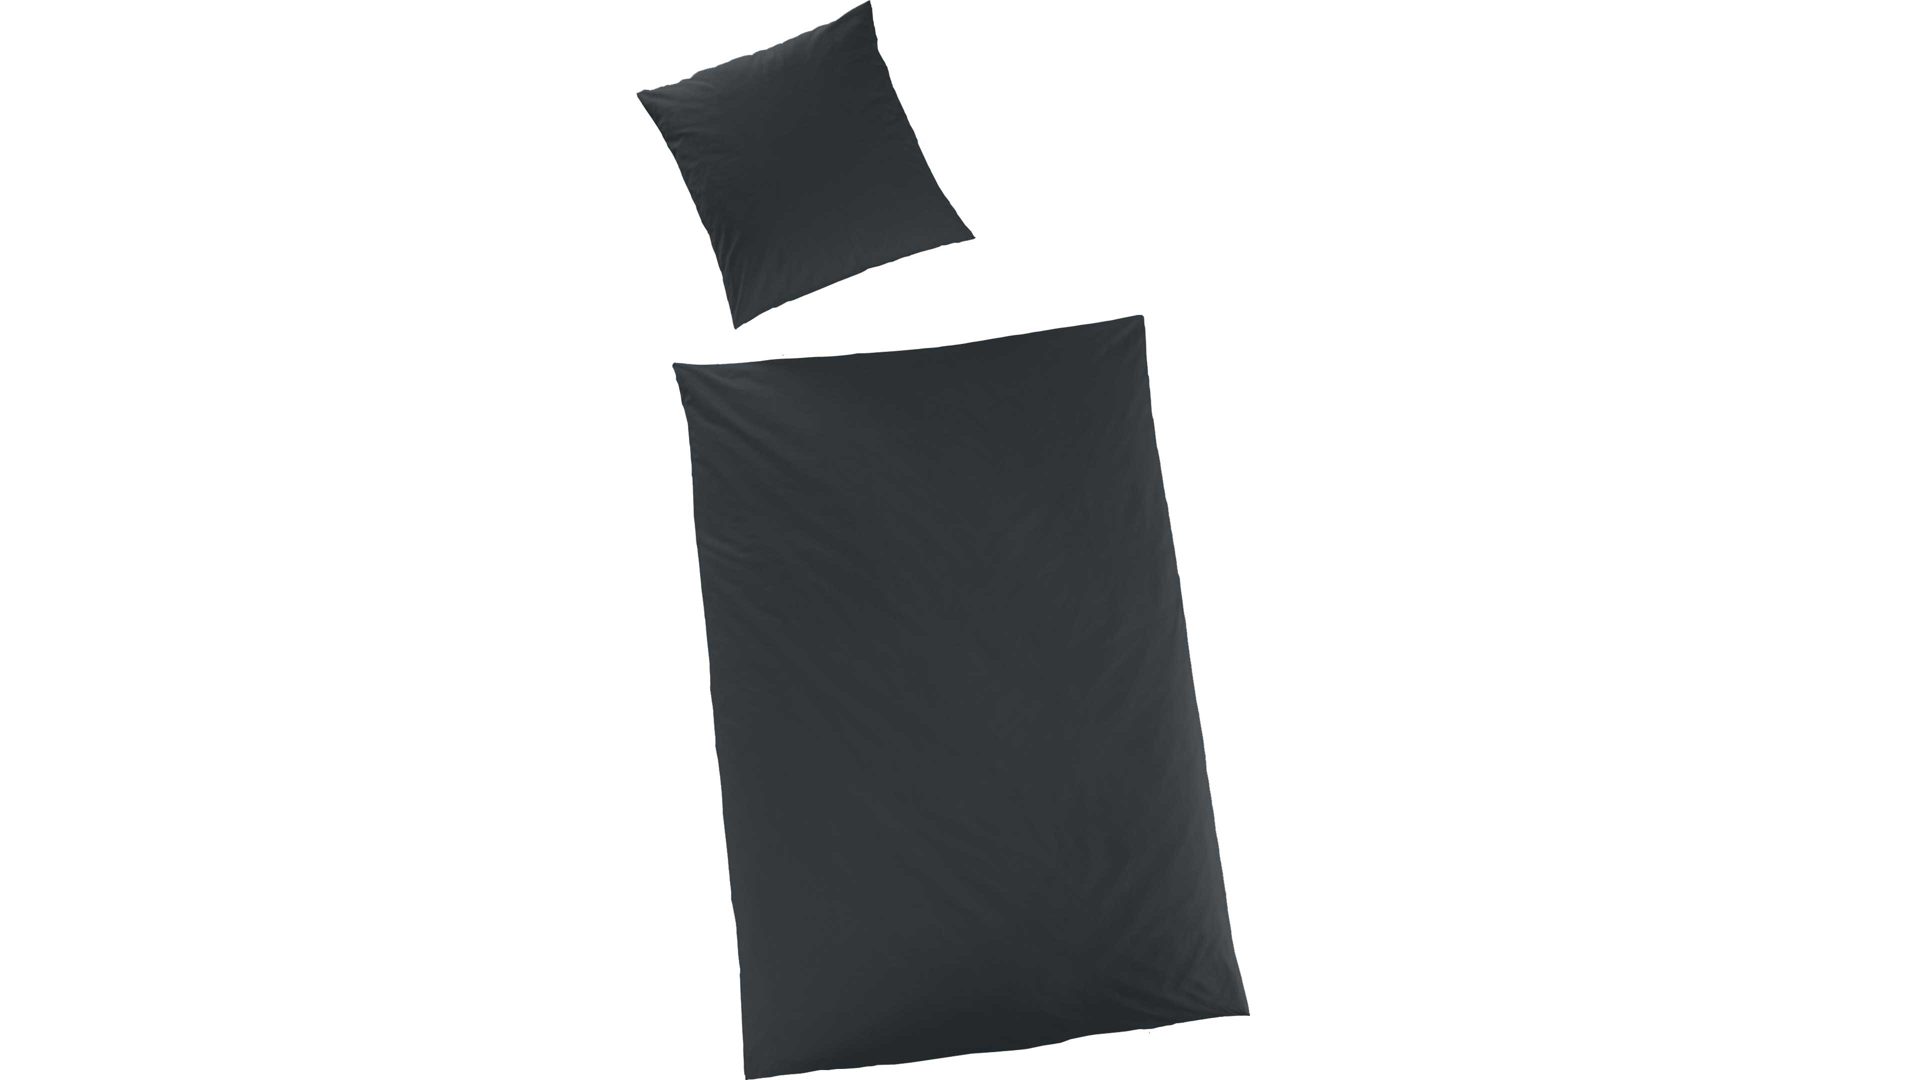 Bettwäsche-Set H.g. hahn haustextilien aus Stoff in Schwarz HAHN Luxus-Satin-Bettwäsche Sempre schwarzer Baumwollsatin – zweiteilig, ca. 155 x 220 cm